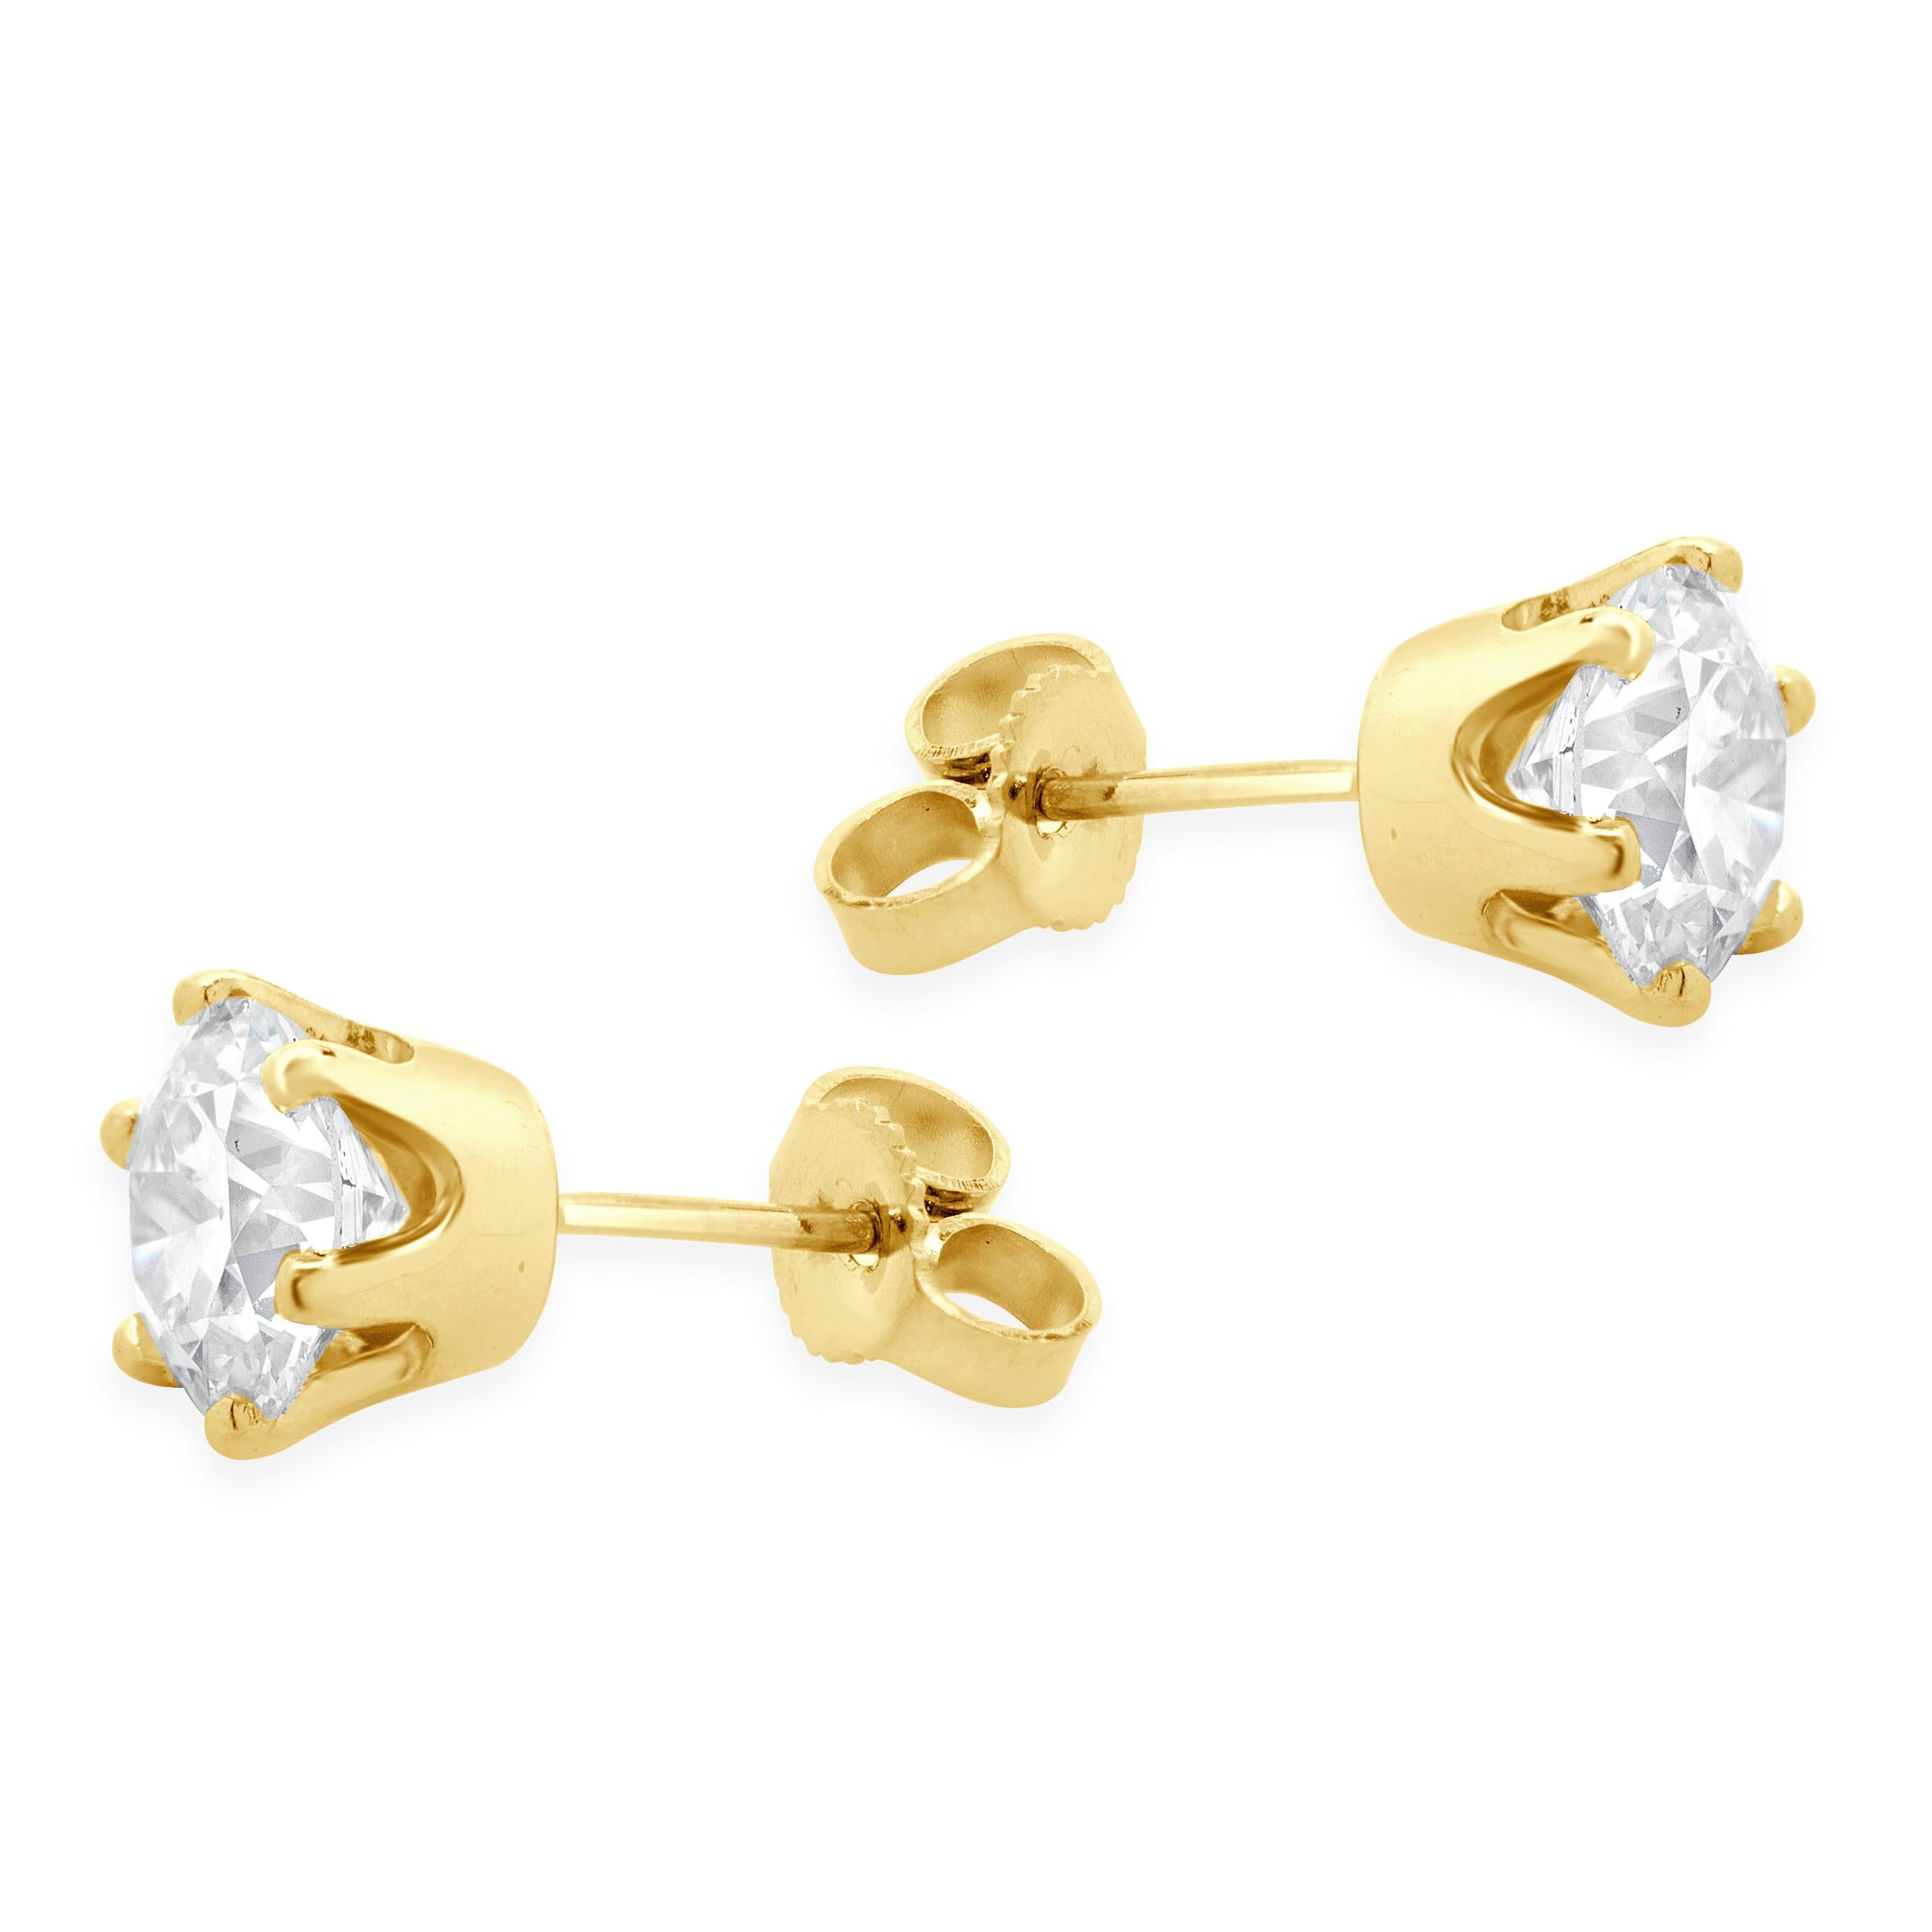 MATERIAL: 14K Gelbgold
Diamanten: 2 runde europäische Schliffe = 2,00cttw
Farbe: G 
Klarheit: VS2-SI1
Abmessungen: Die Ohrringe haben einen Durchmesser von etwa 7.60 mm.
Verschlüsse: Friktionsverschlüsse
Gewicht: 1.78 Gramm
